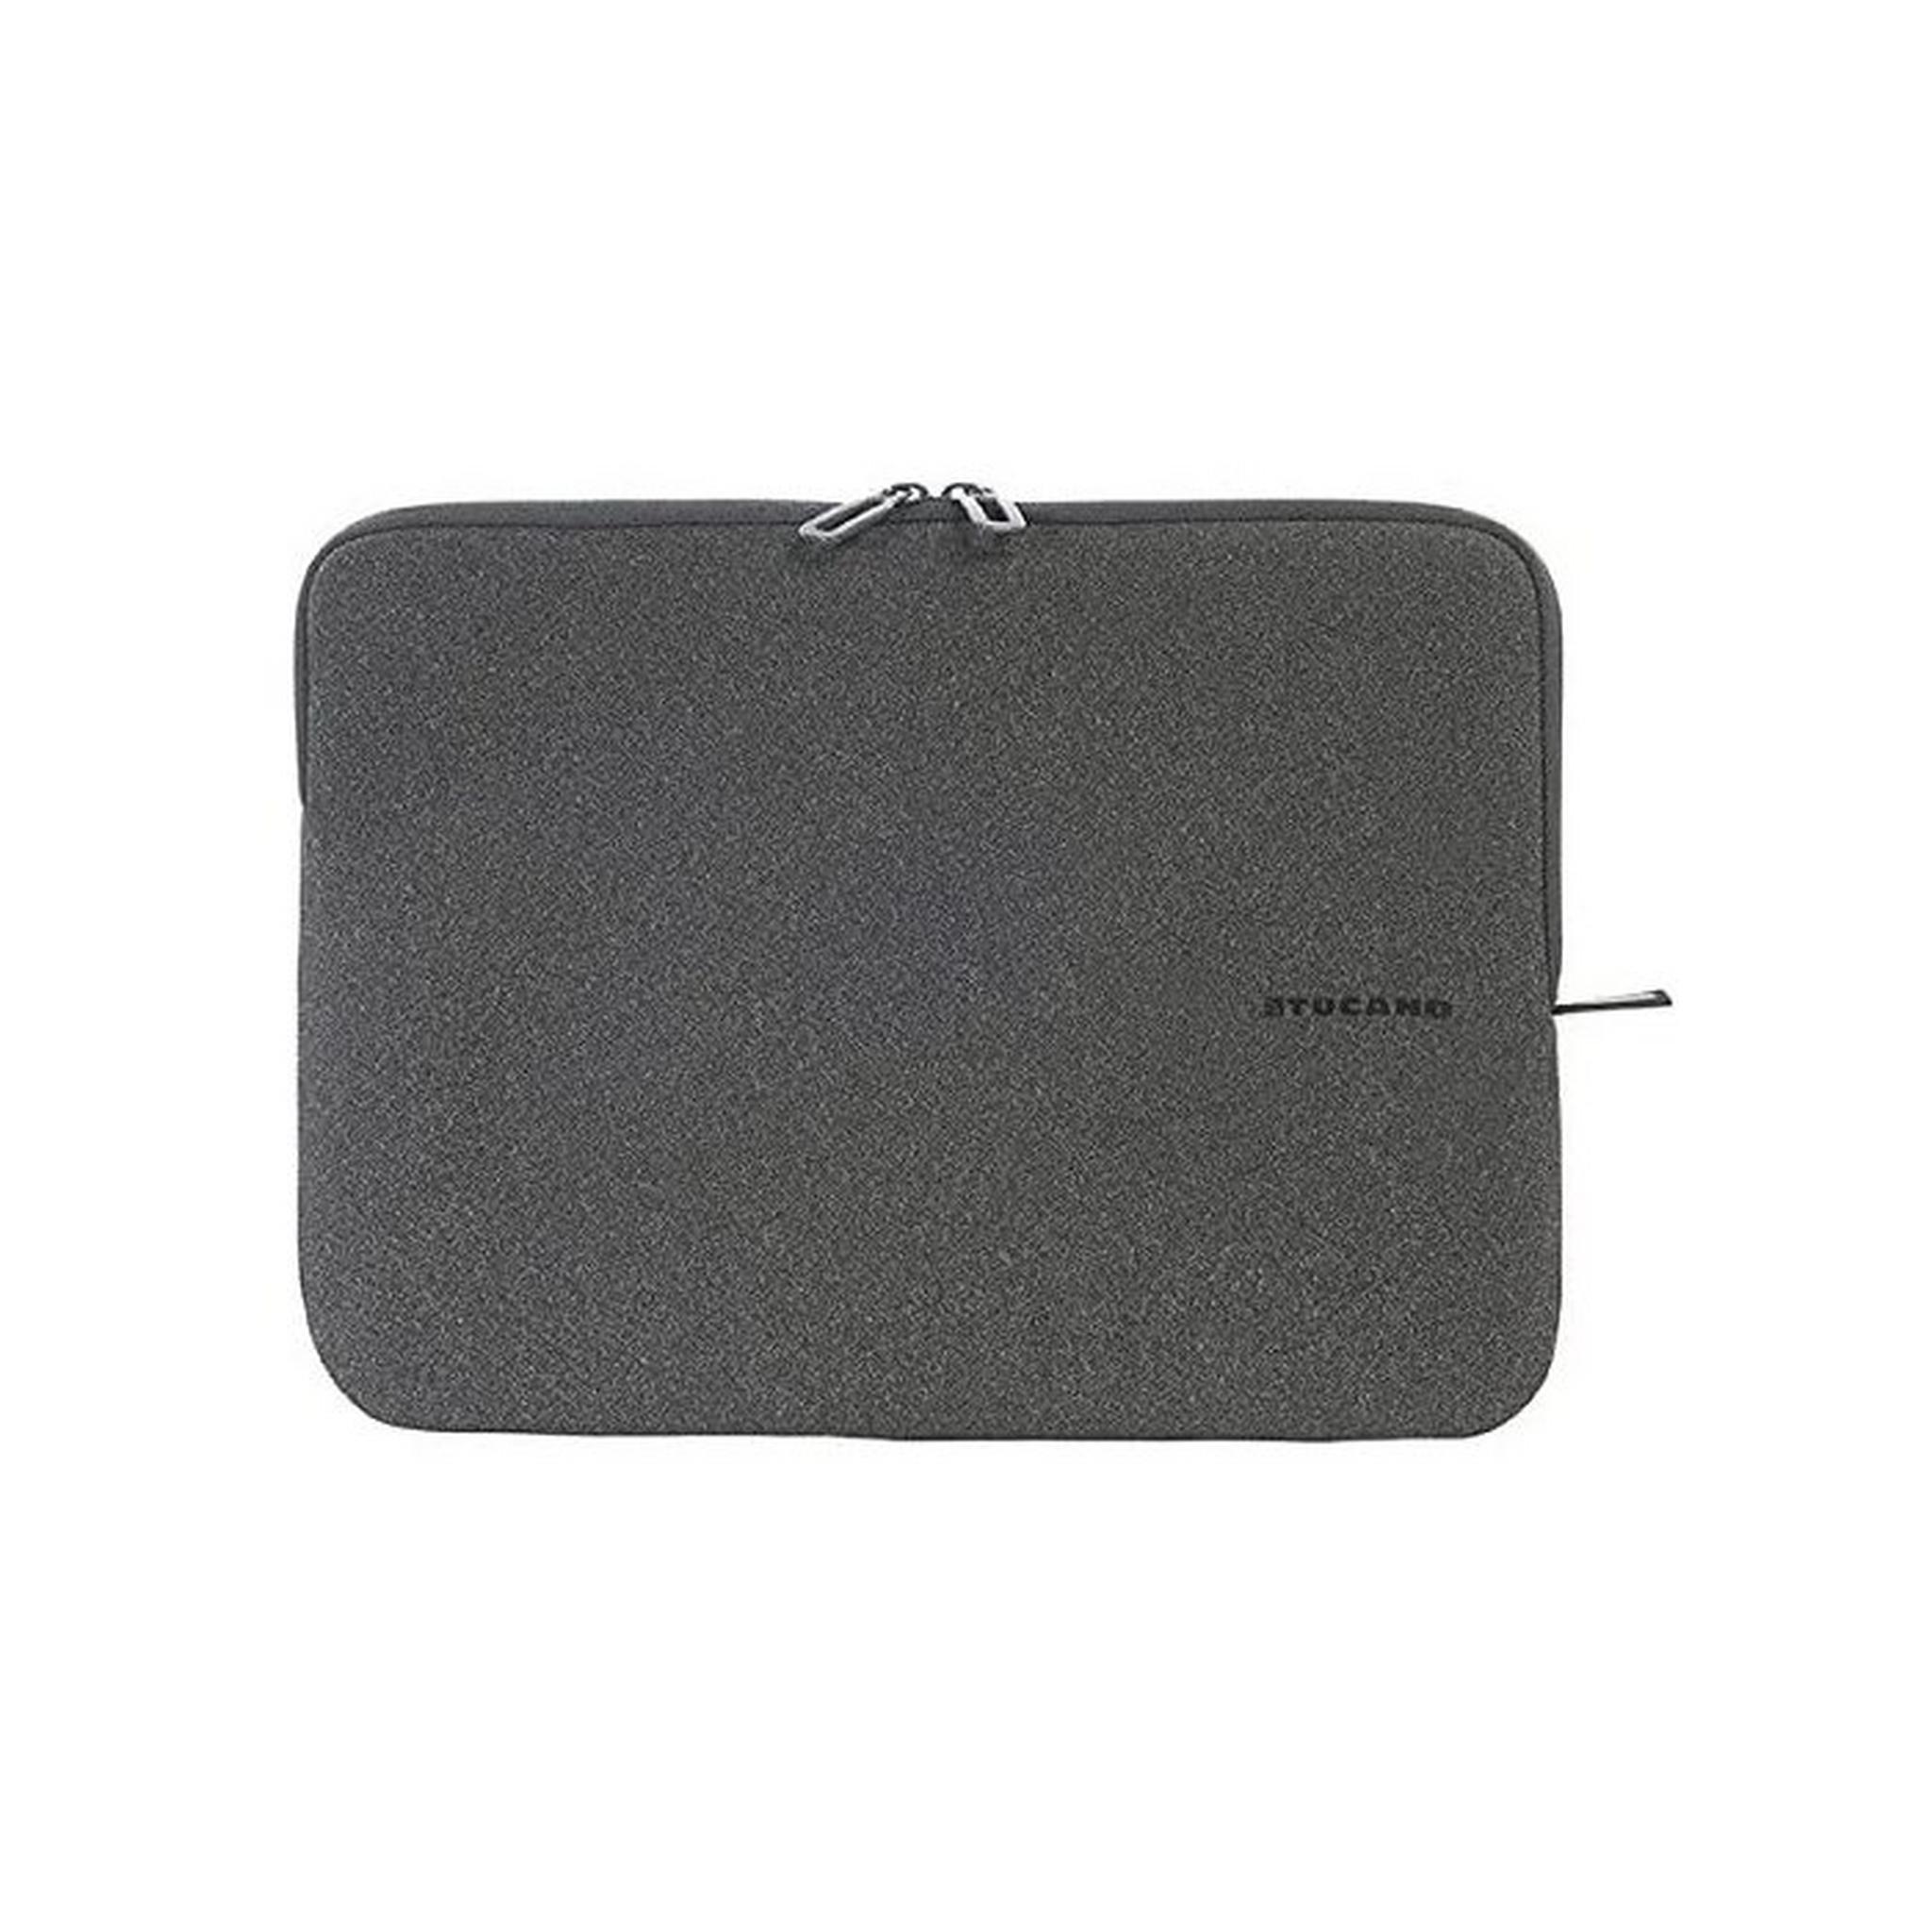 Tucano Melange Second Skin Sleeve for 13-14 Inch Laptops, BFM1314-BK – Black